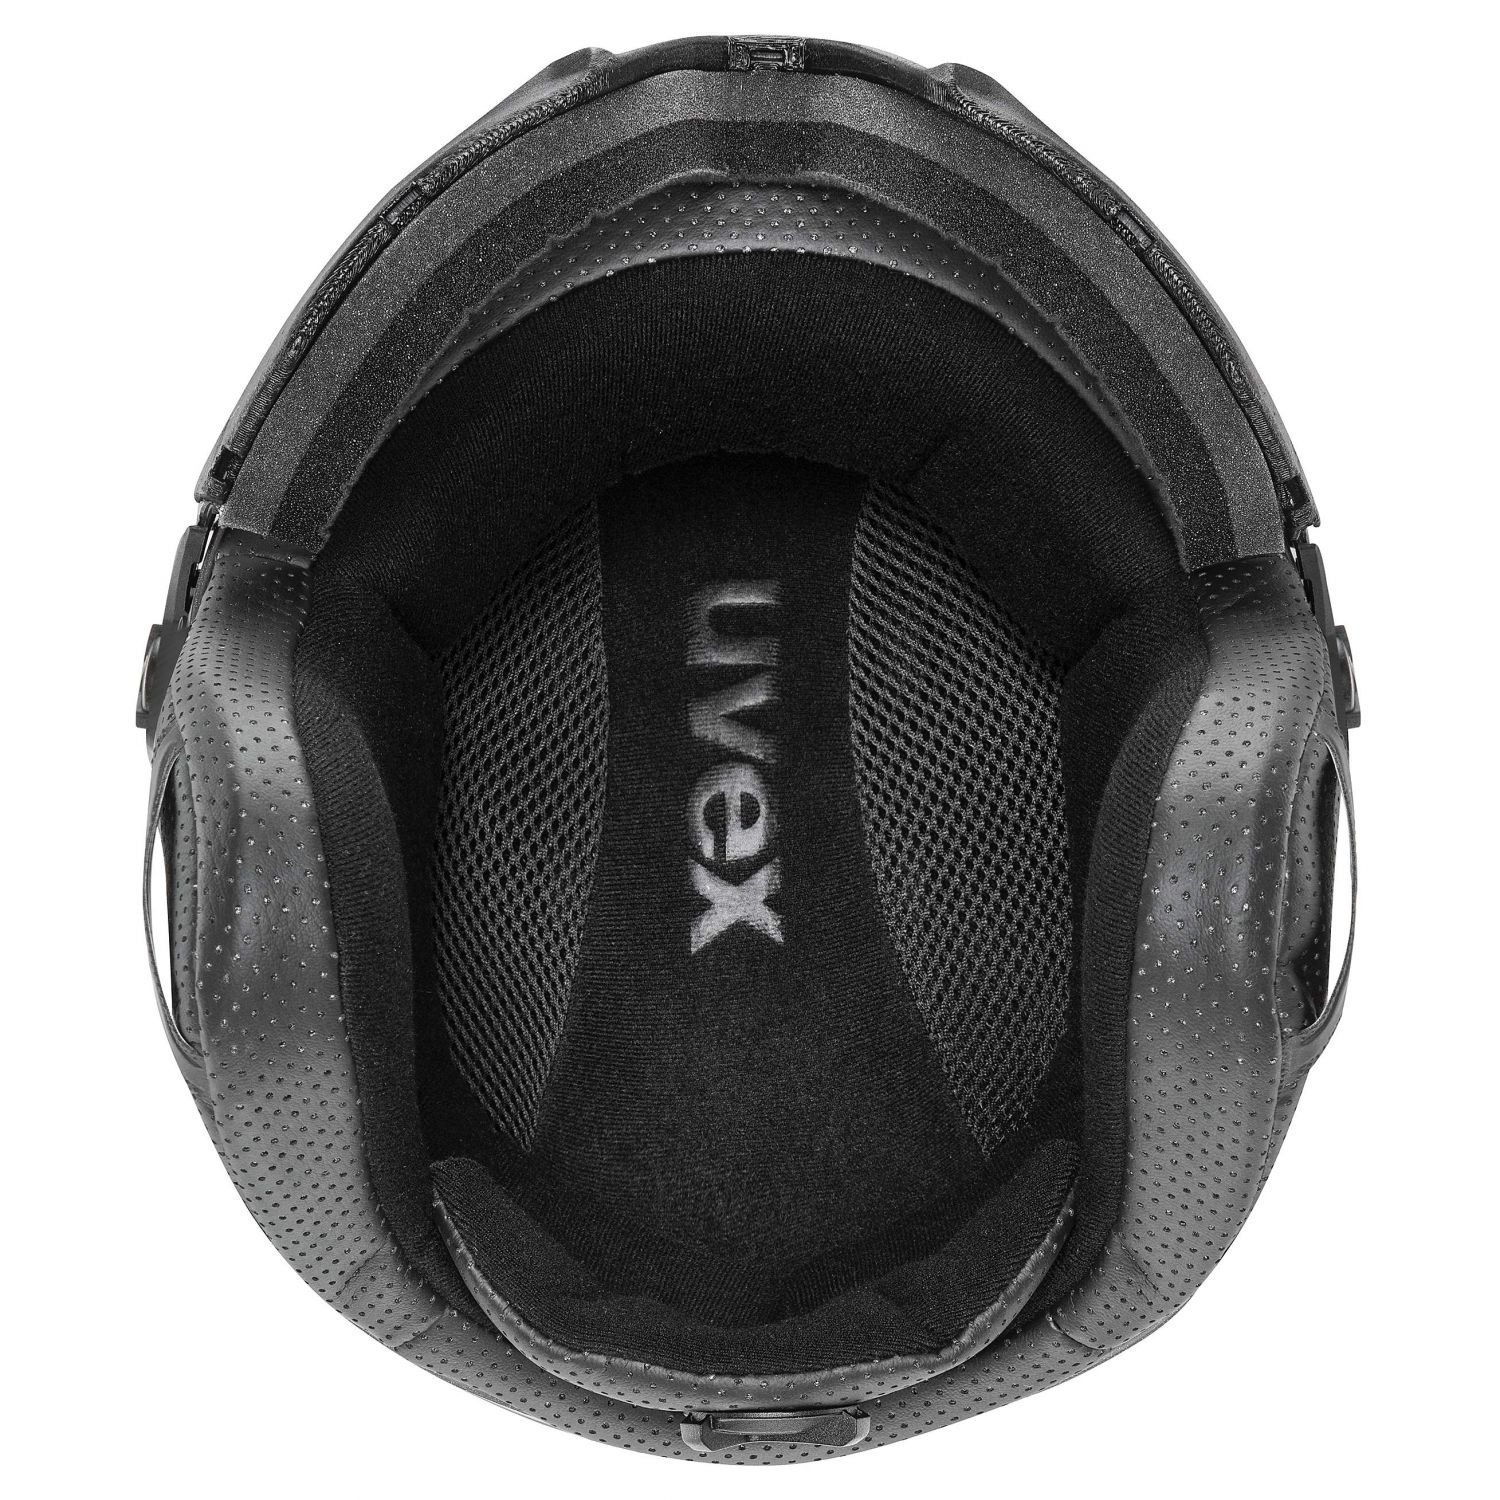 Uvex Instinct Visor, laskettelukypärä visiirillä, musta